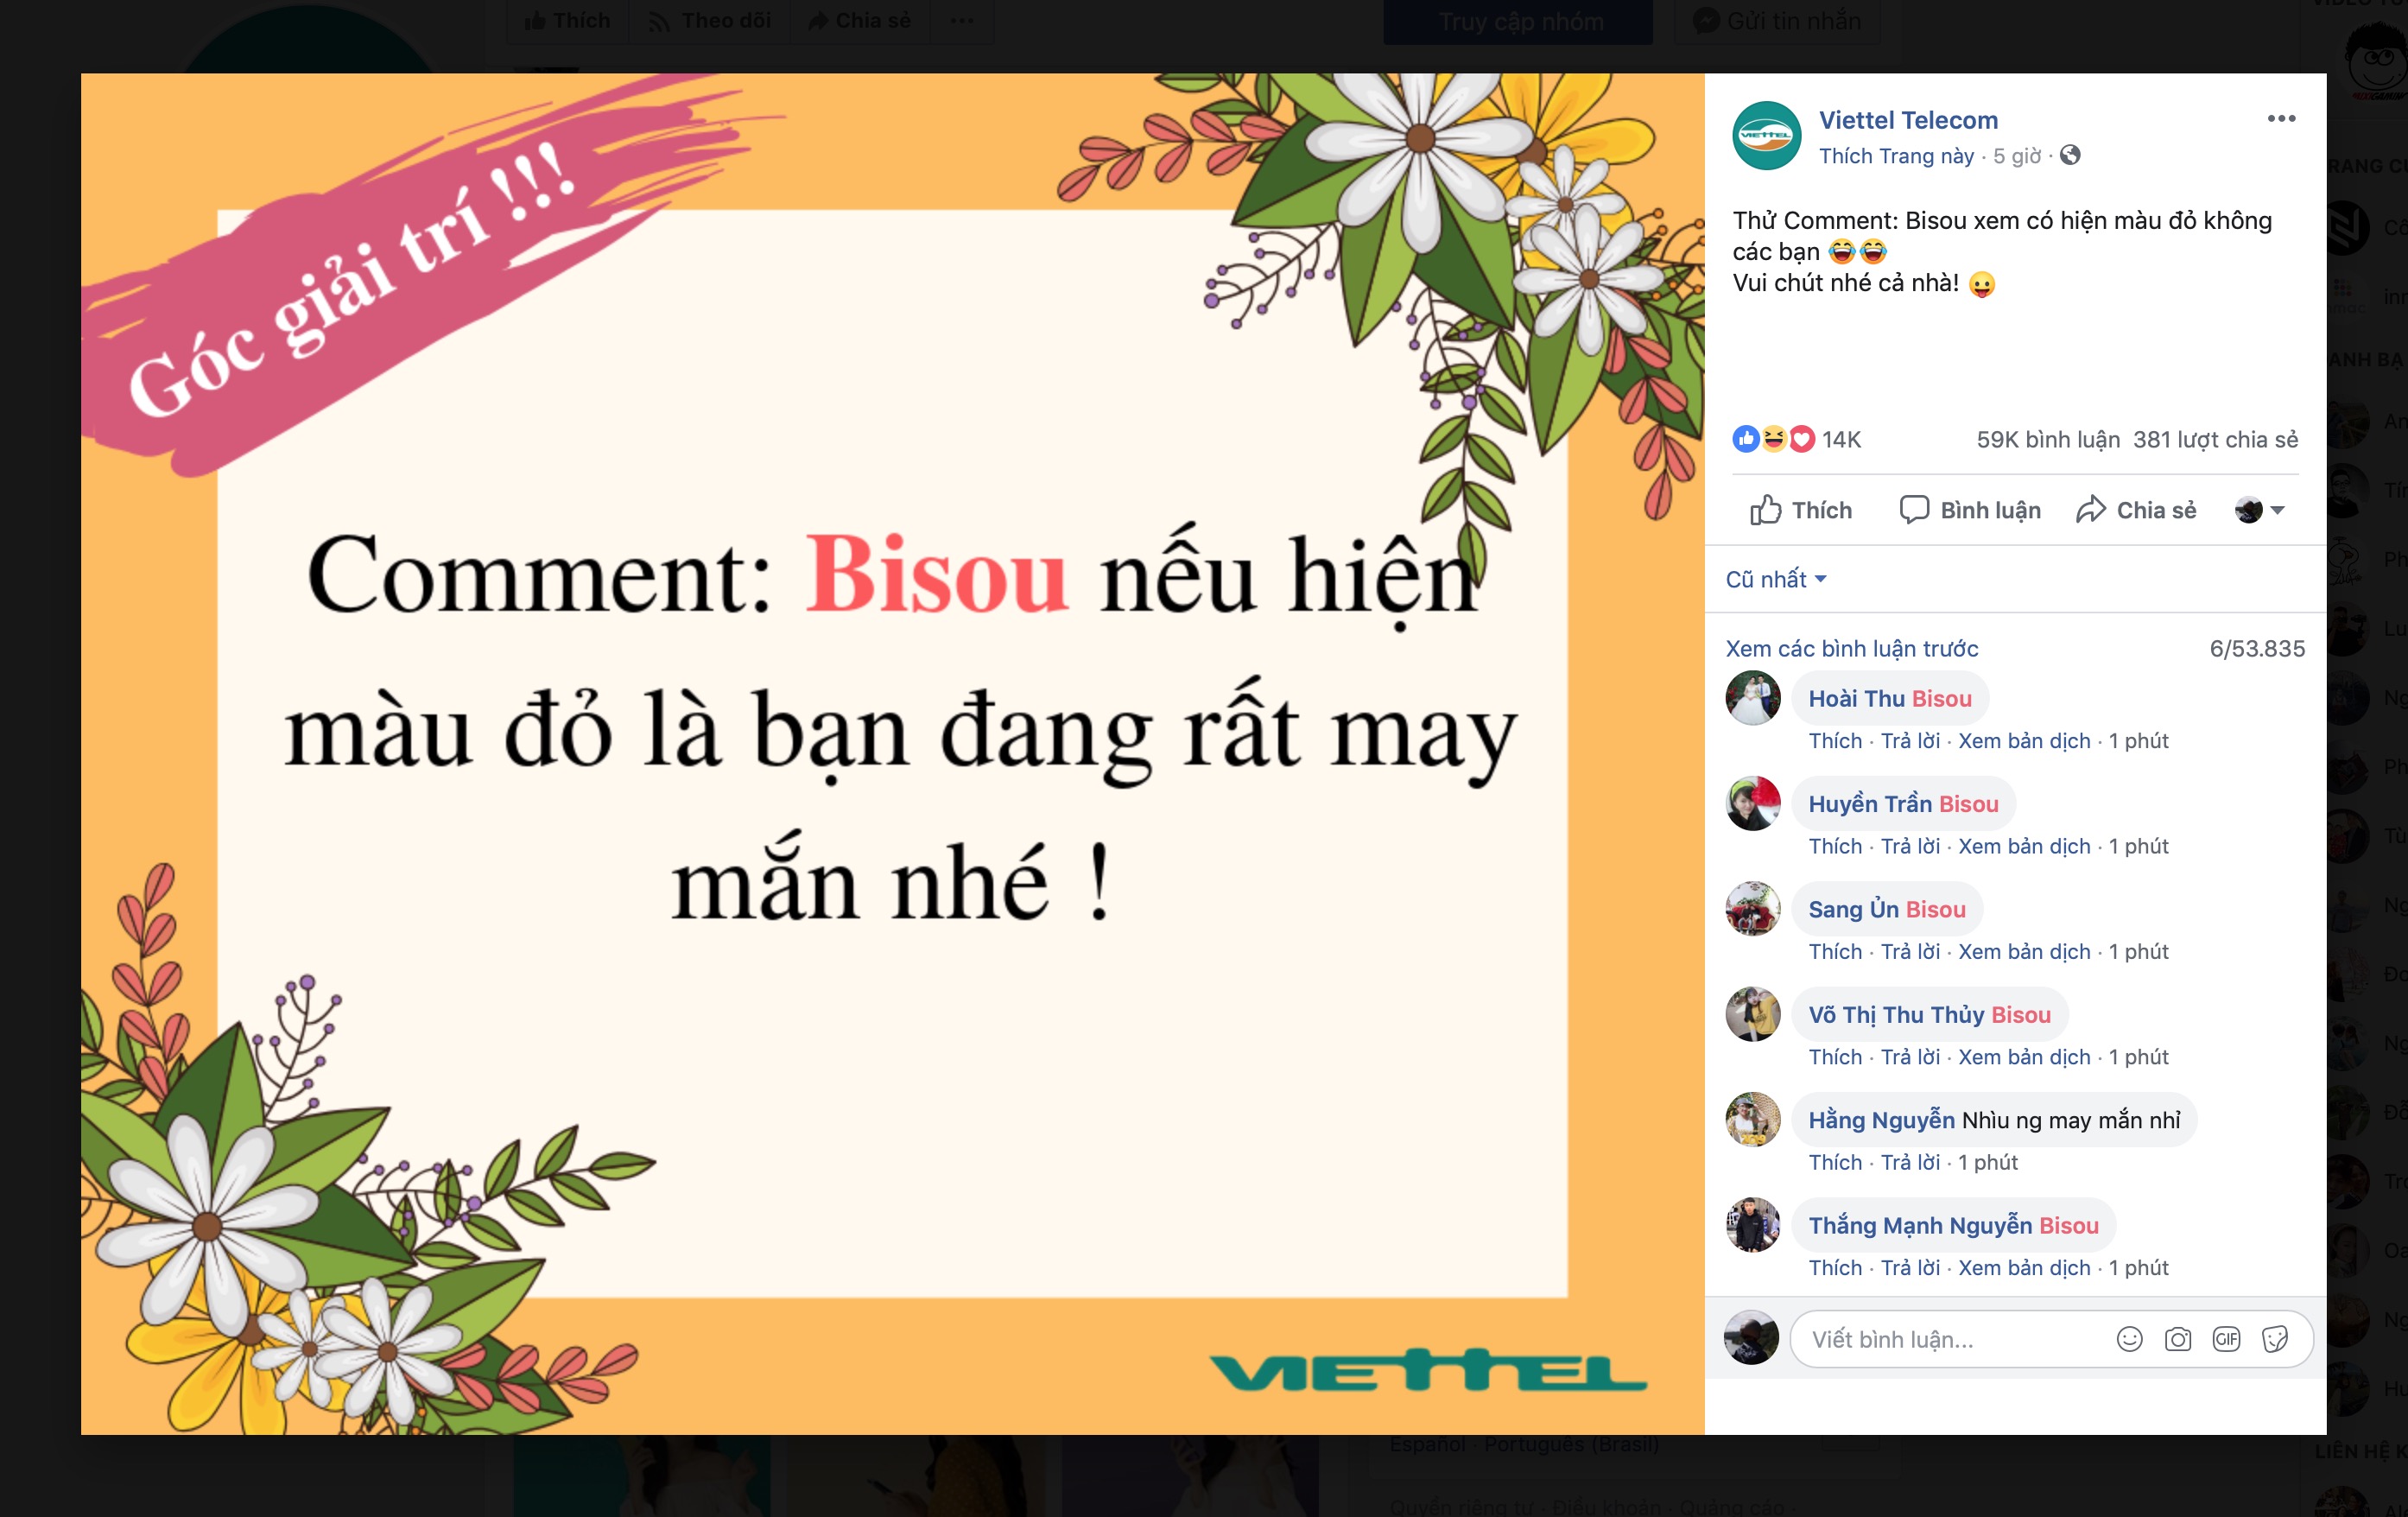 Lợi dụng Facebook sập, nhiều fanpage lừa người theo dõi bằng bình luận Bisou